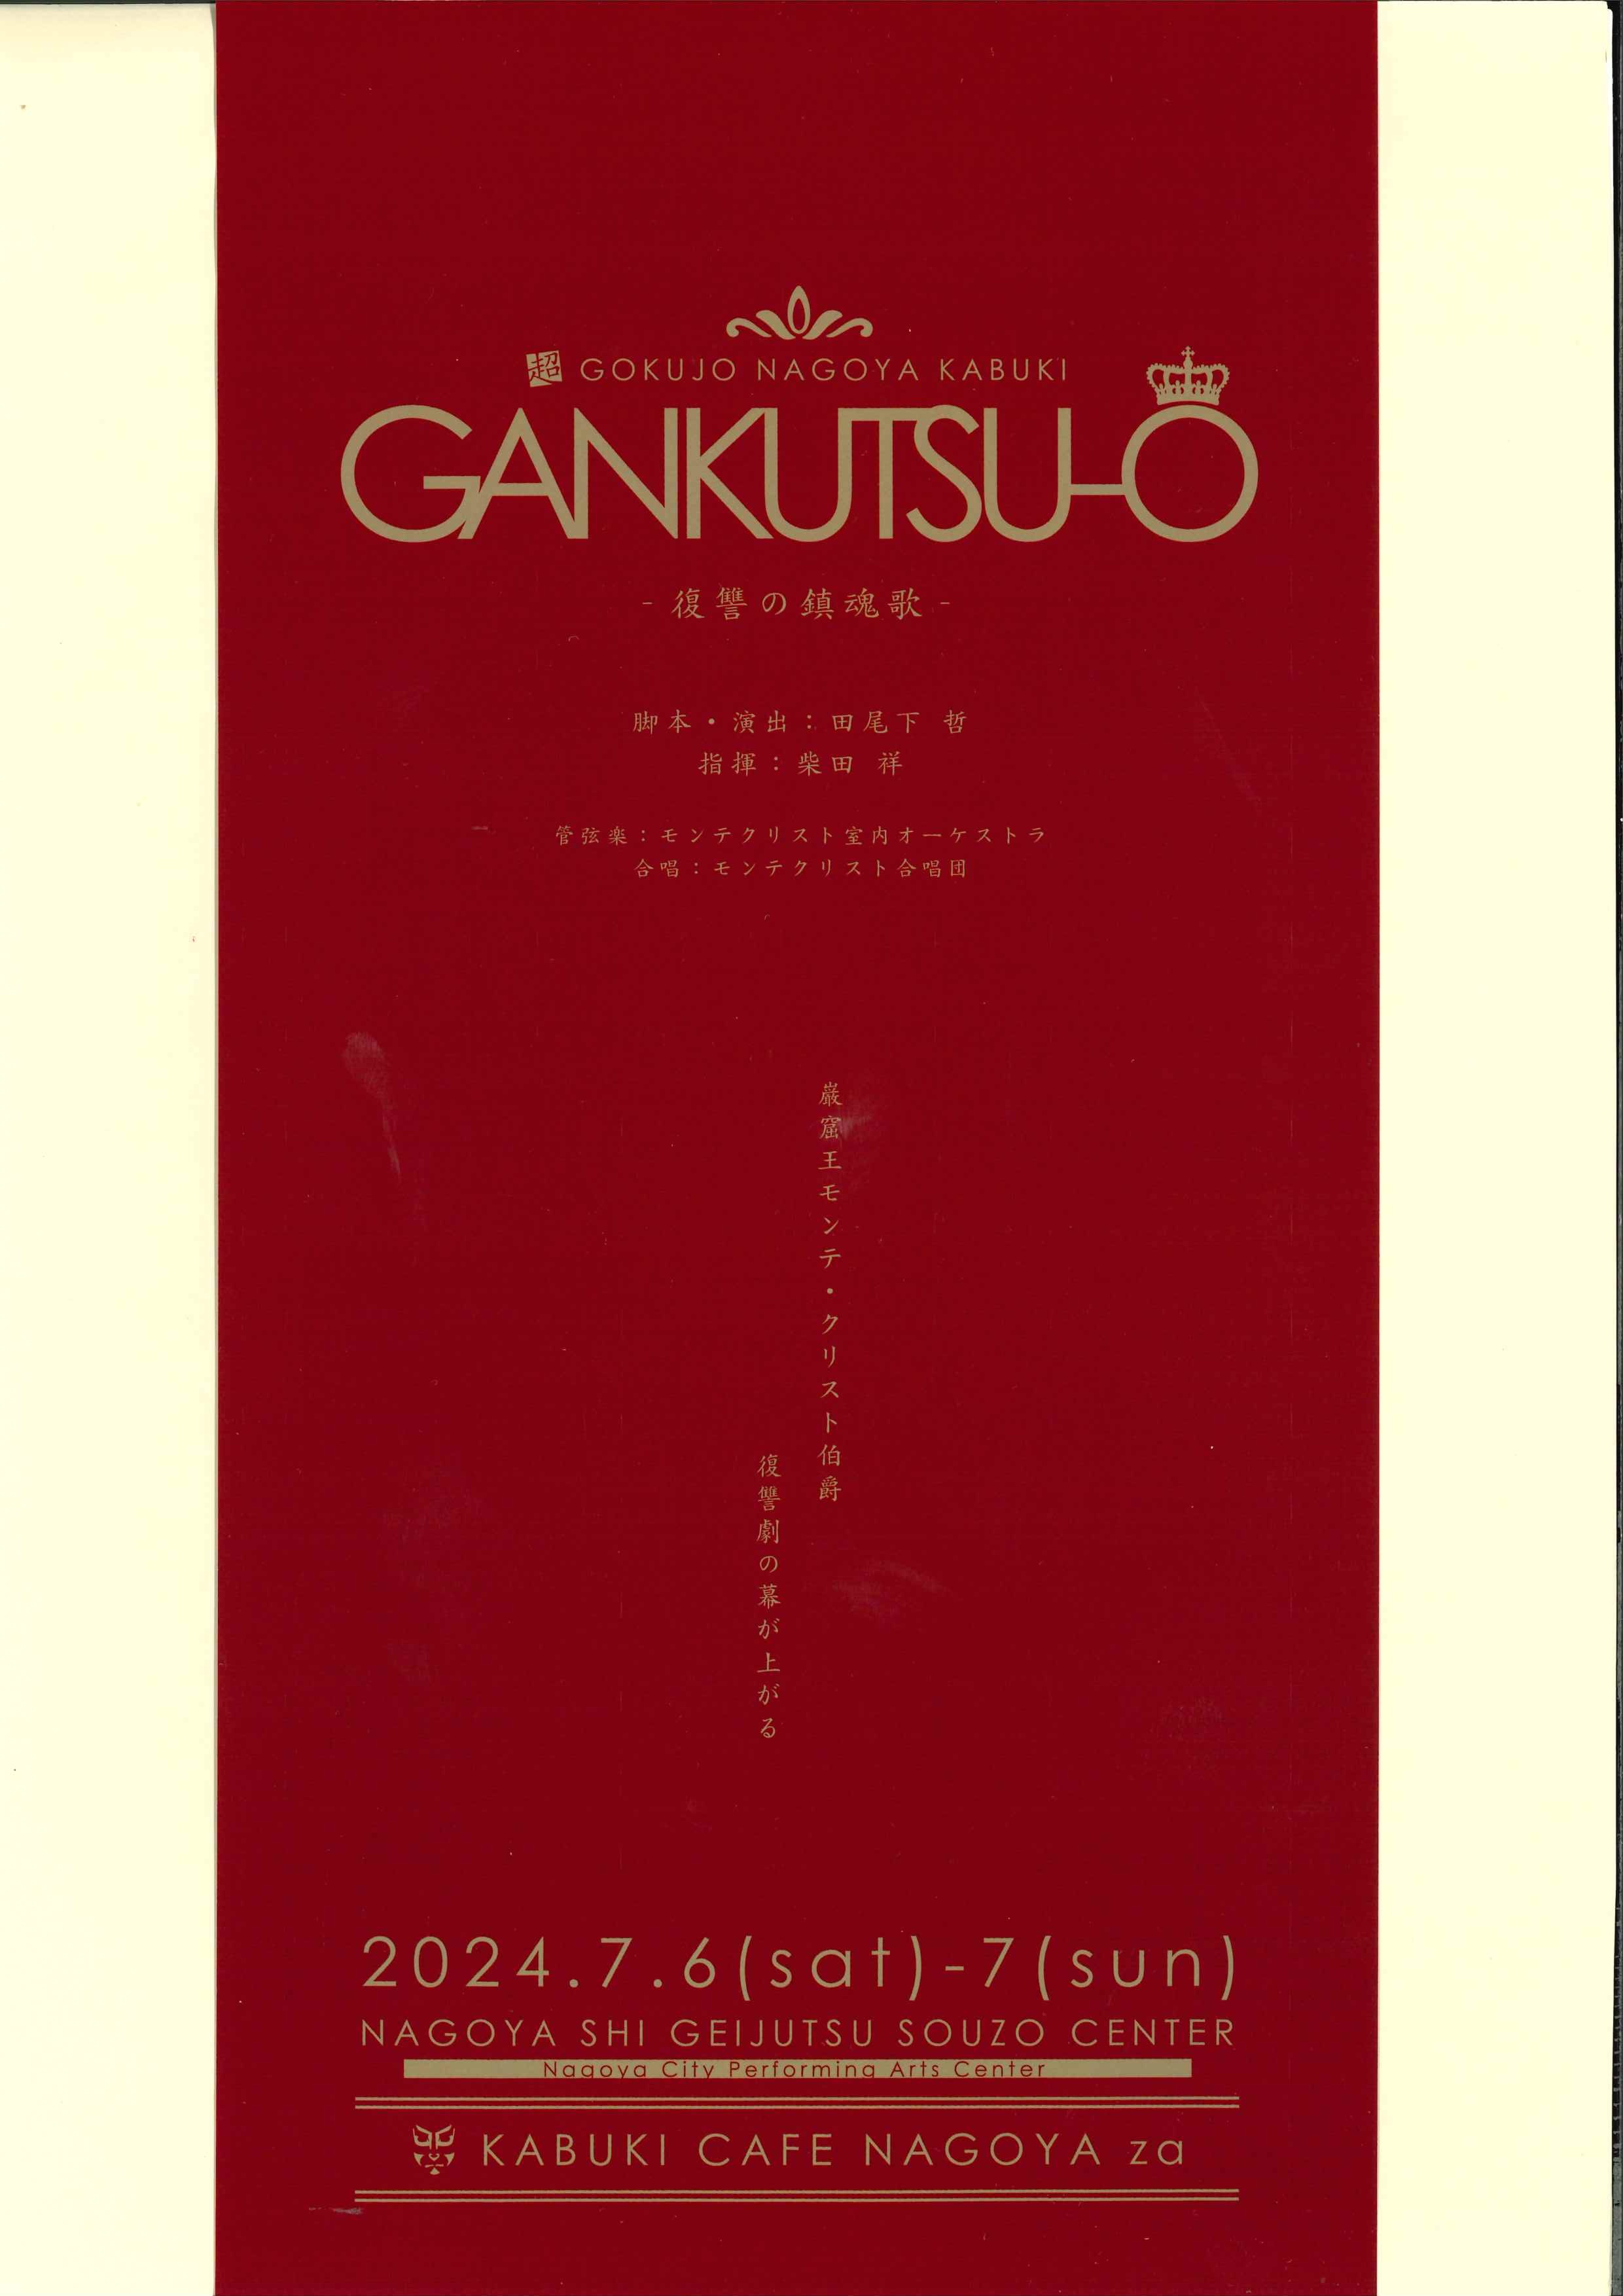 超・極上 ナゴヤカブキ「GANKUTSU-O 復讐の鎮魂歌」のチラシ